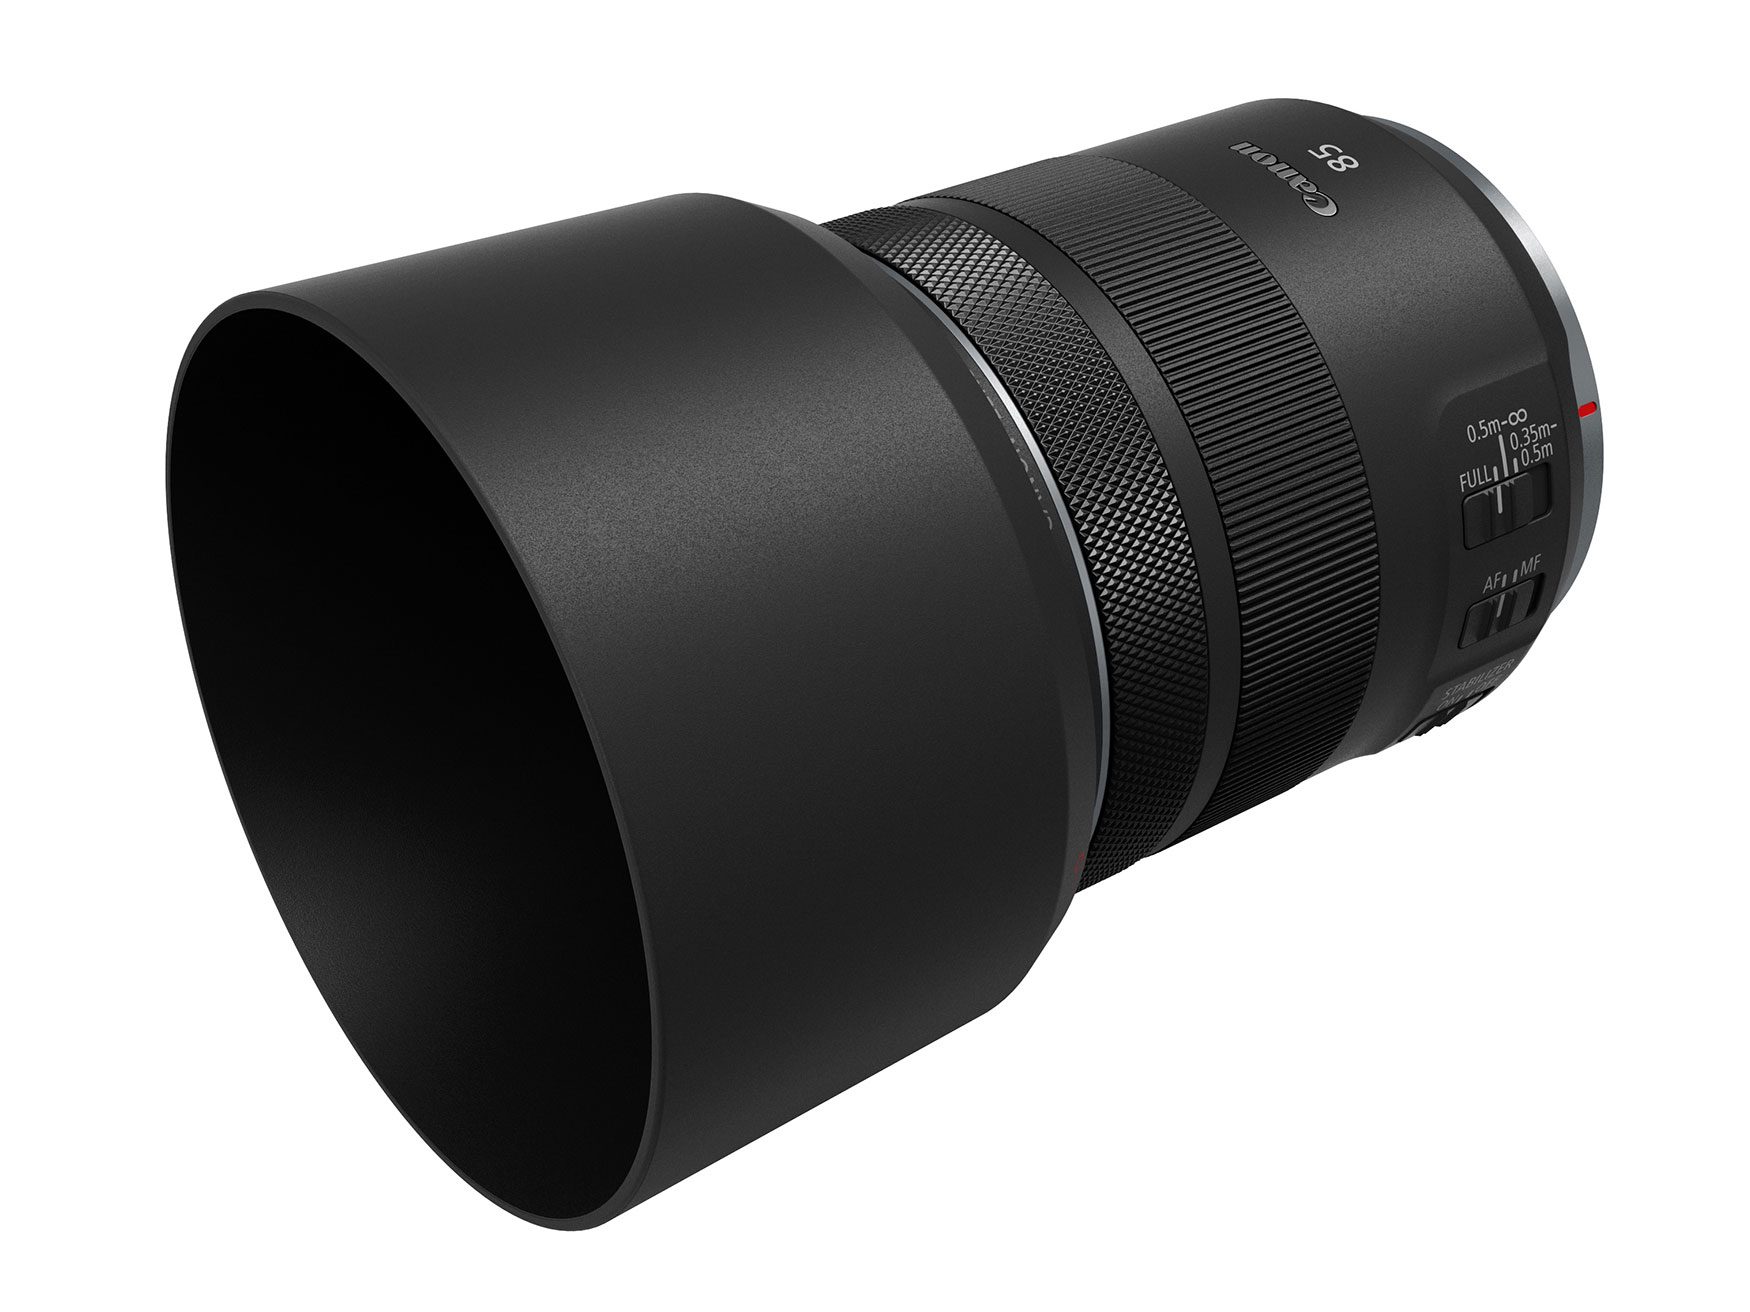 Canon ra mắt ống kính RF 85mm F2 Macro IS STM dành cho nhiếp ảnh và chụp cận cảnh